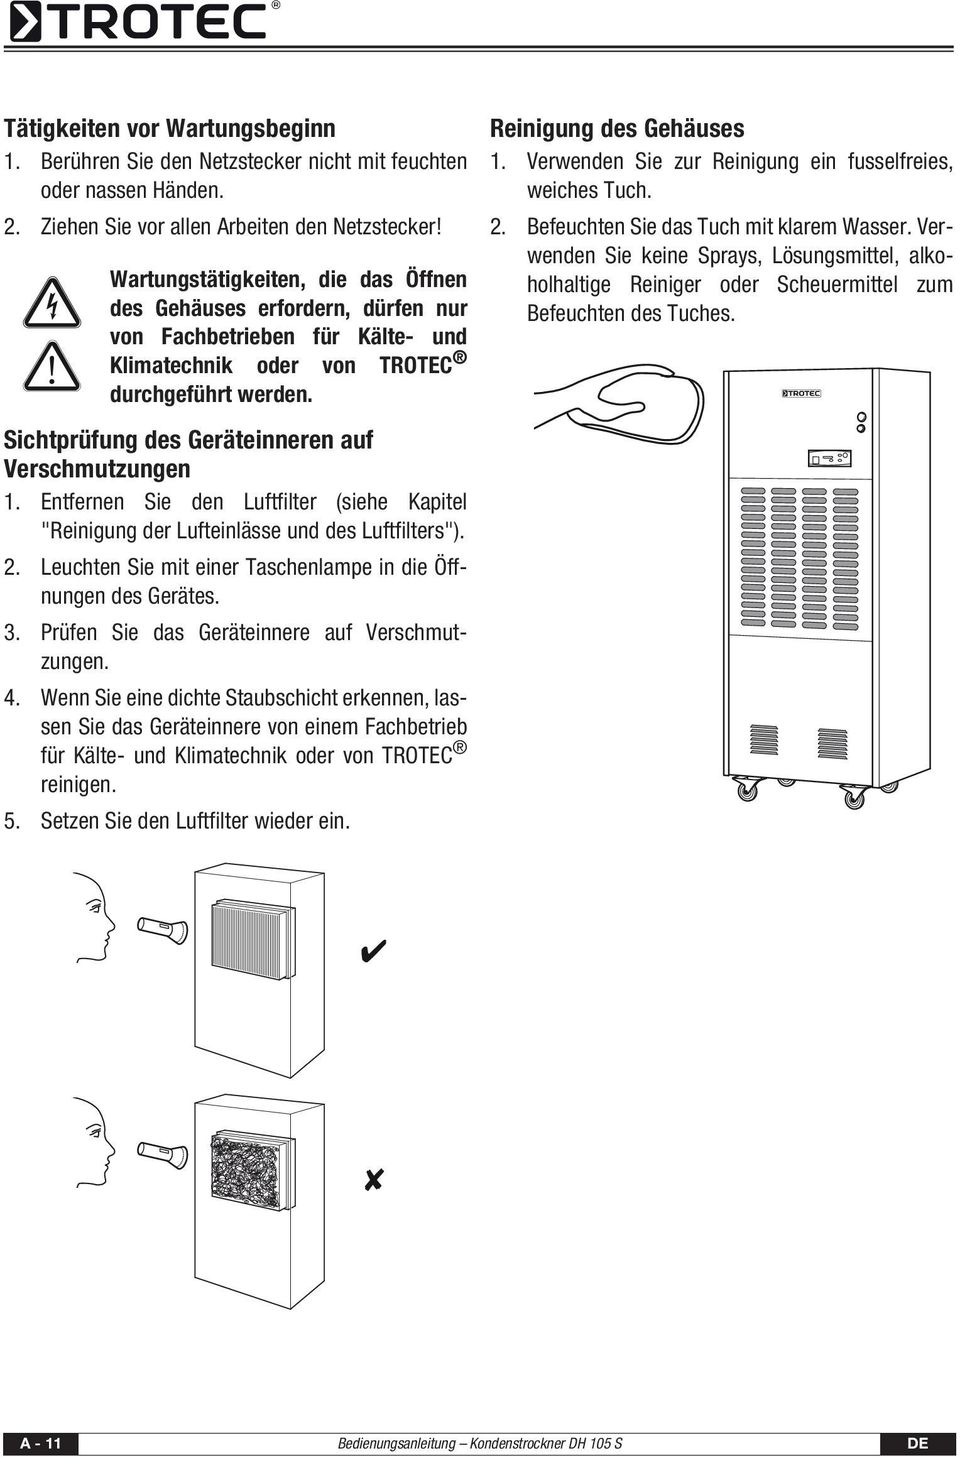 Sichtprüfung des Geräteinneren auf Verschmutzungen 1. Entfernen Sie den Luftfilter (siehe Kapitel "Reinigung der Lufteinlässe und des Luftfilters"). 2.